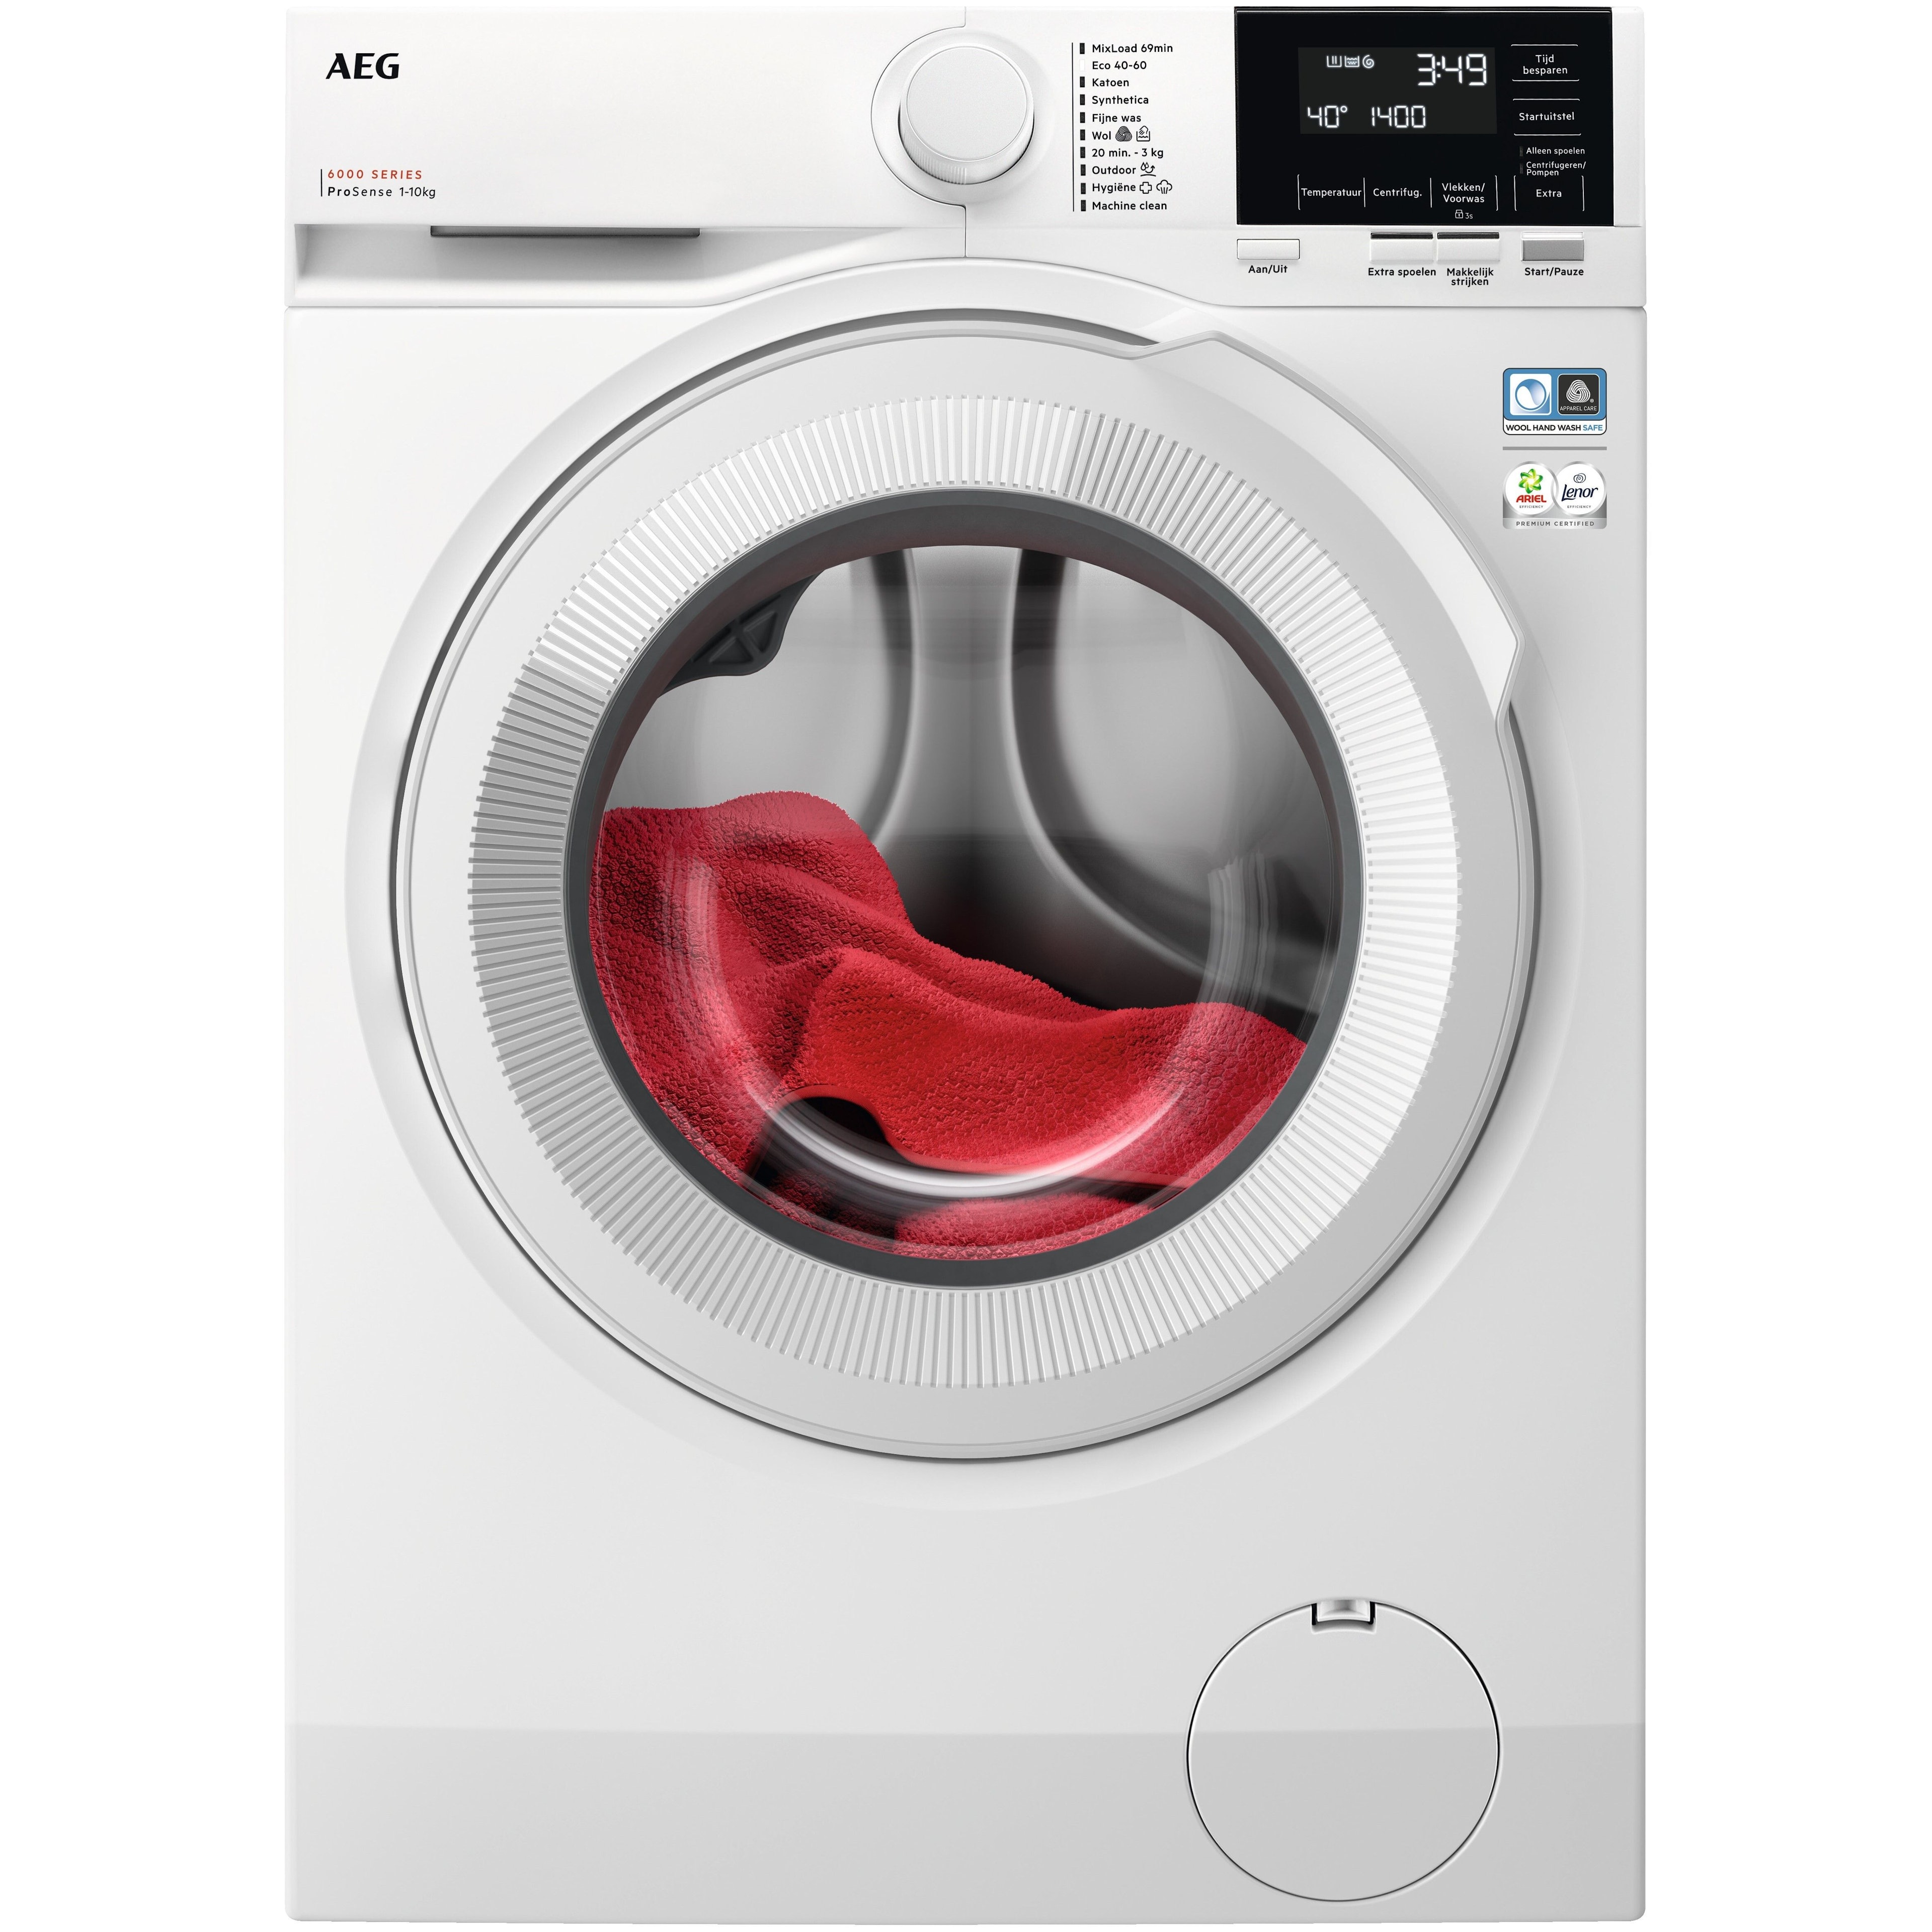 AEG LR63142 wasmachine afbeelding 1